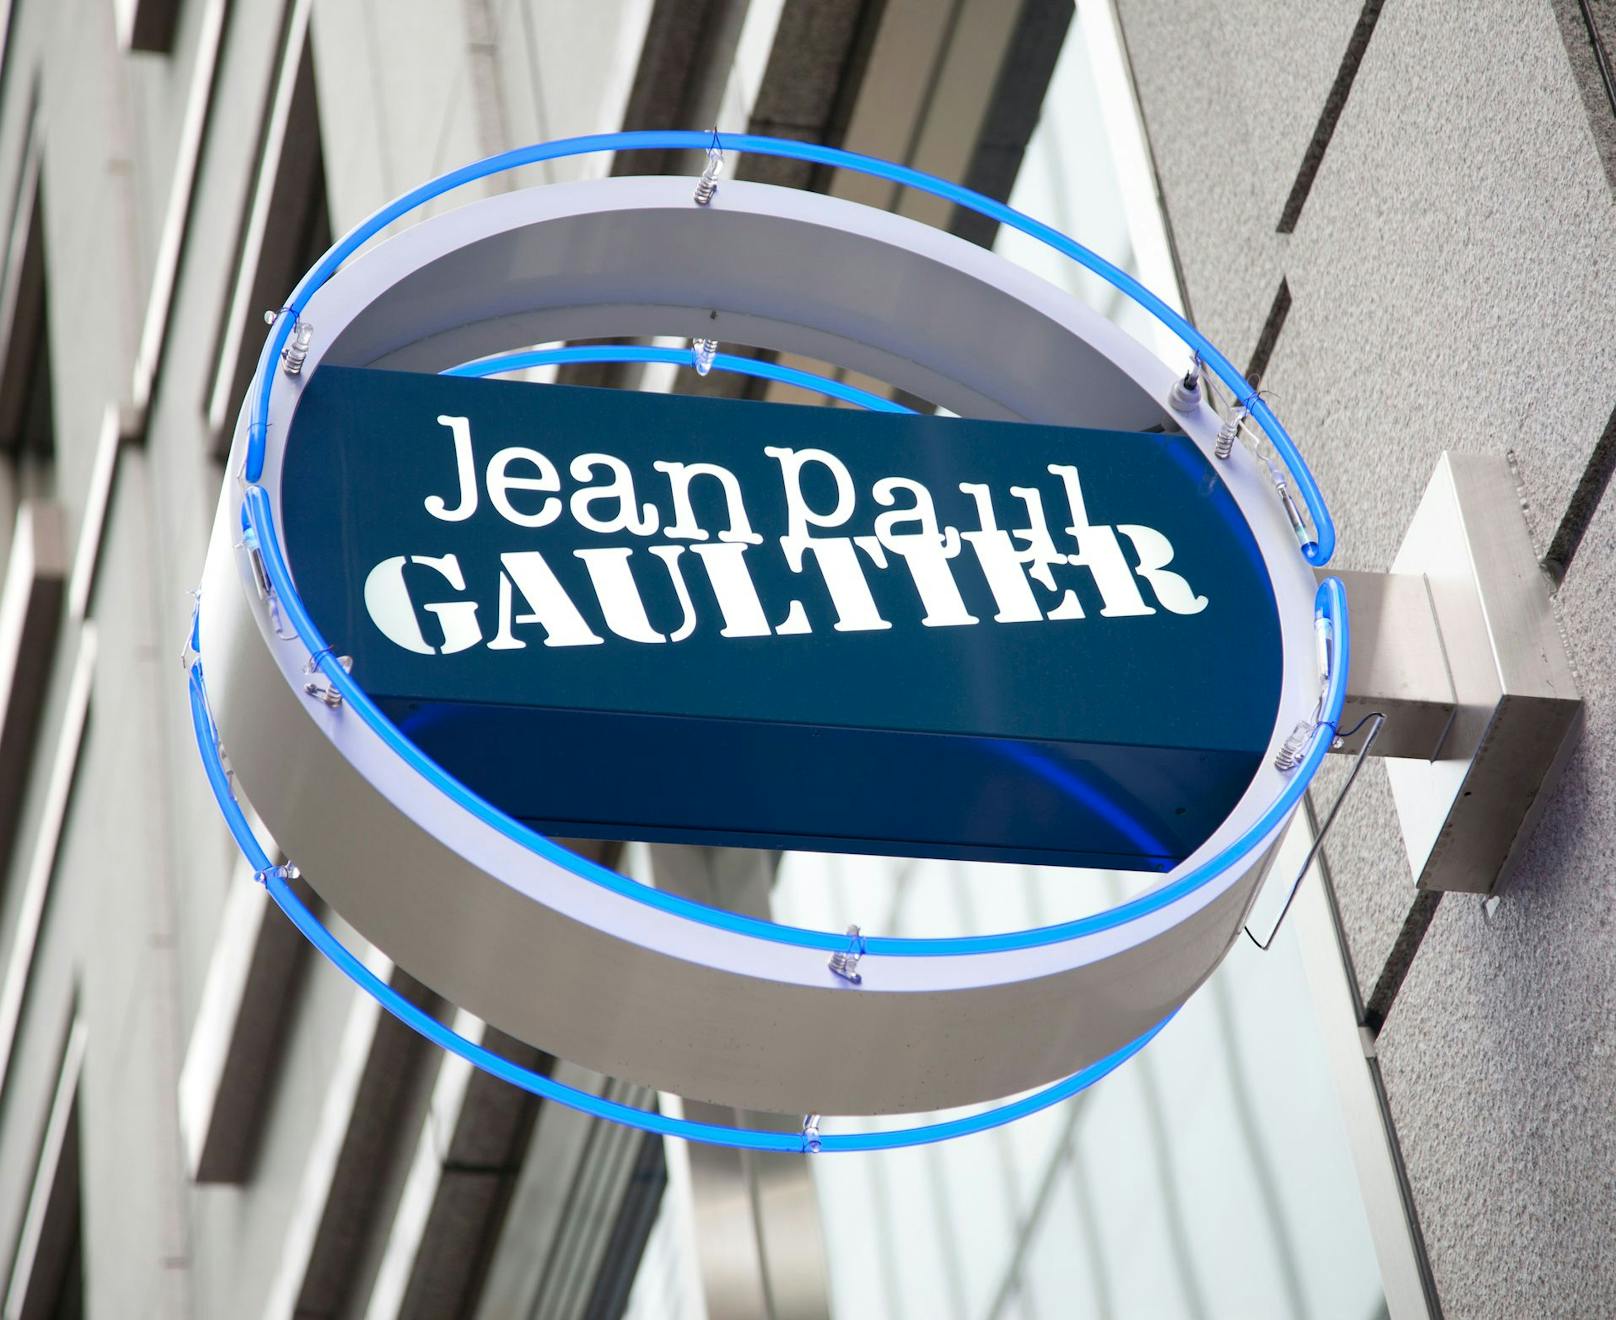 Jean Paul Gaultier kündigte im November 2018 live im französischen Fernsehen an, für seine künftigen Kollektionen keinen Pelz mehr zu nutzen.